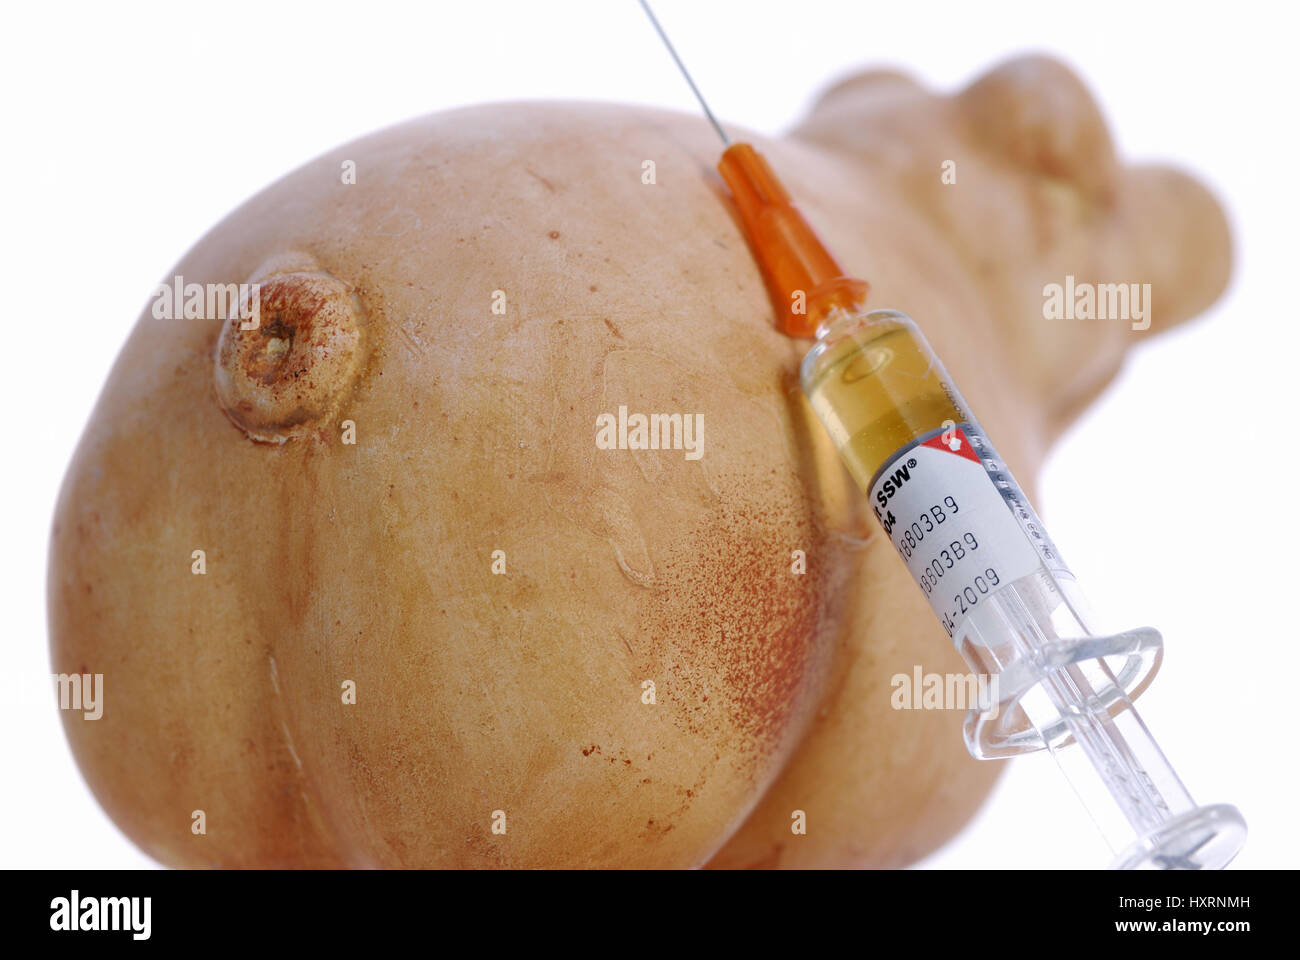 Pig and vaccination syringe, vaccination against the pork influenza, Schwein und Impfspritze, Impfung gegen die Schweinegrippe Stock Photo